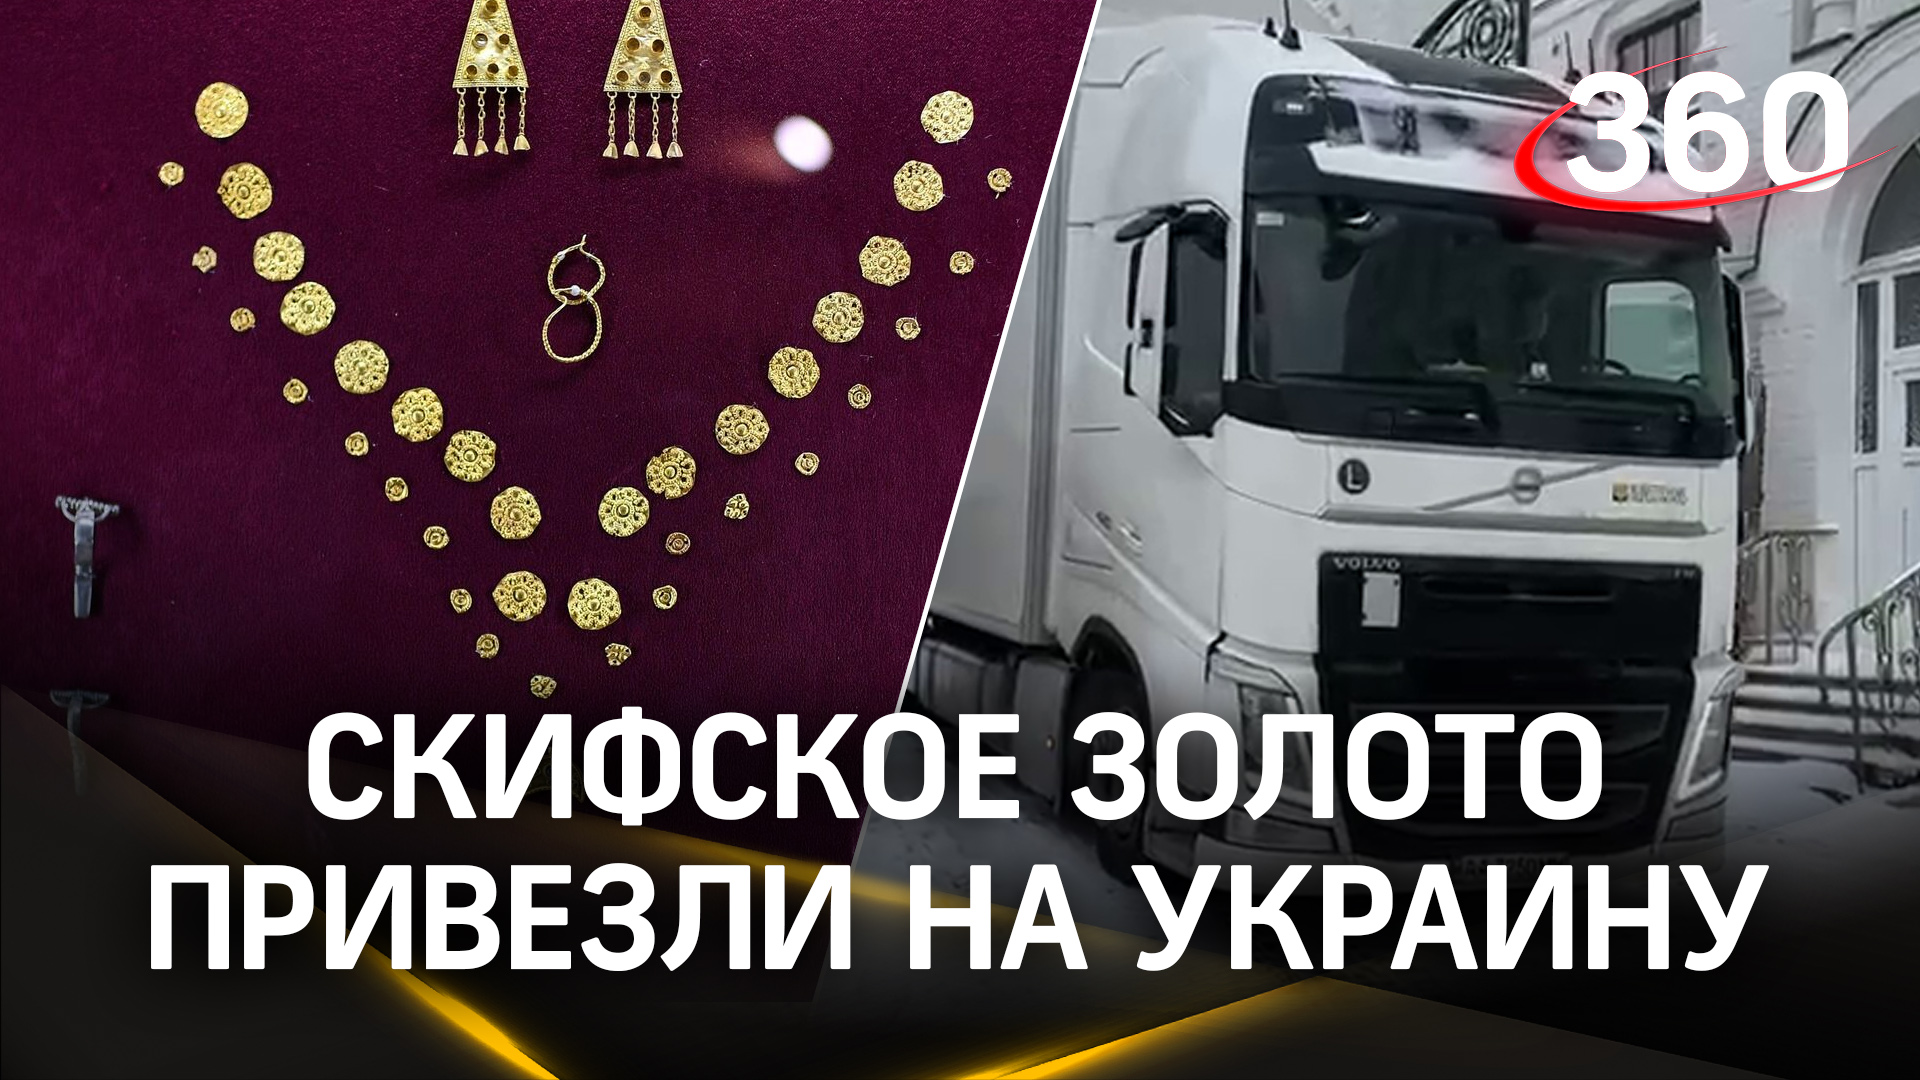 Скифское золото привезли на Украину, сообщает таможенная служба страны